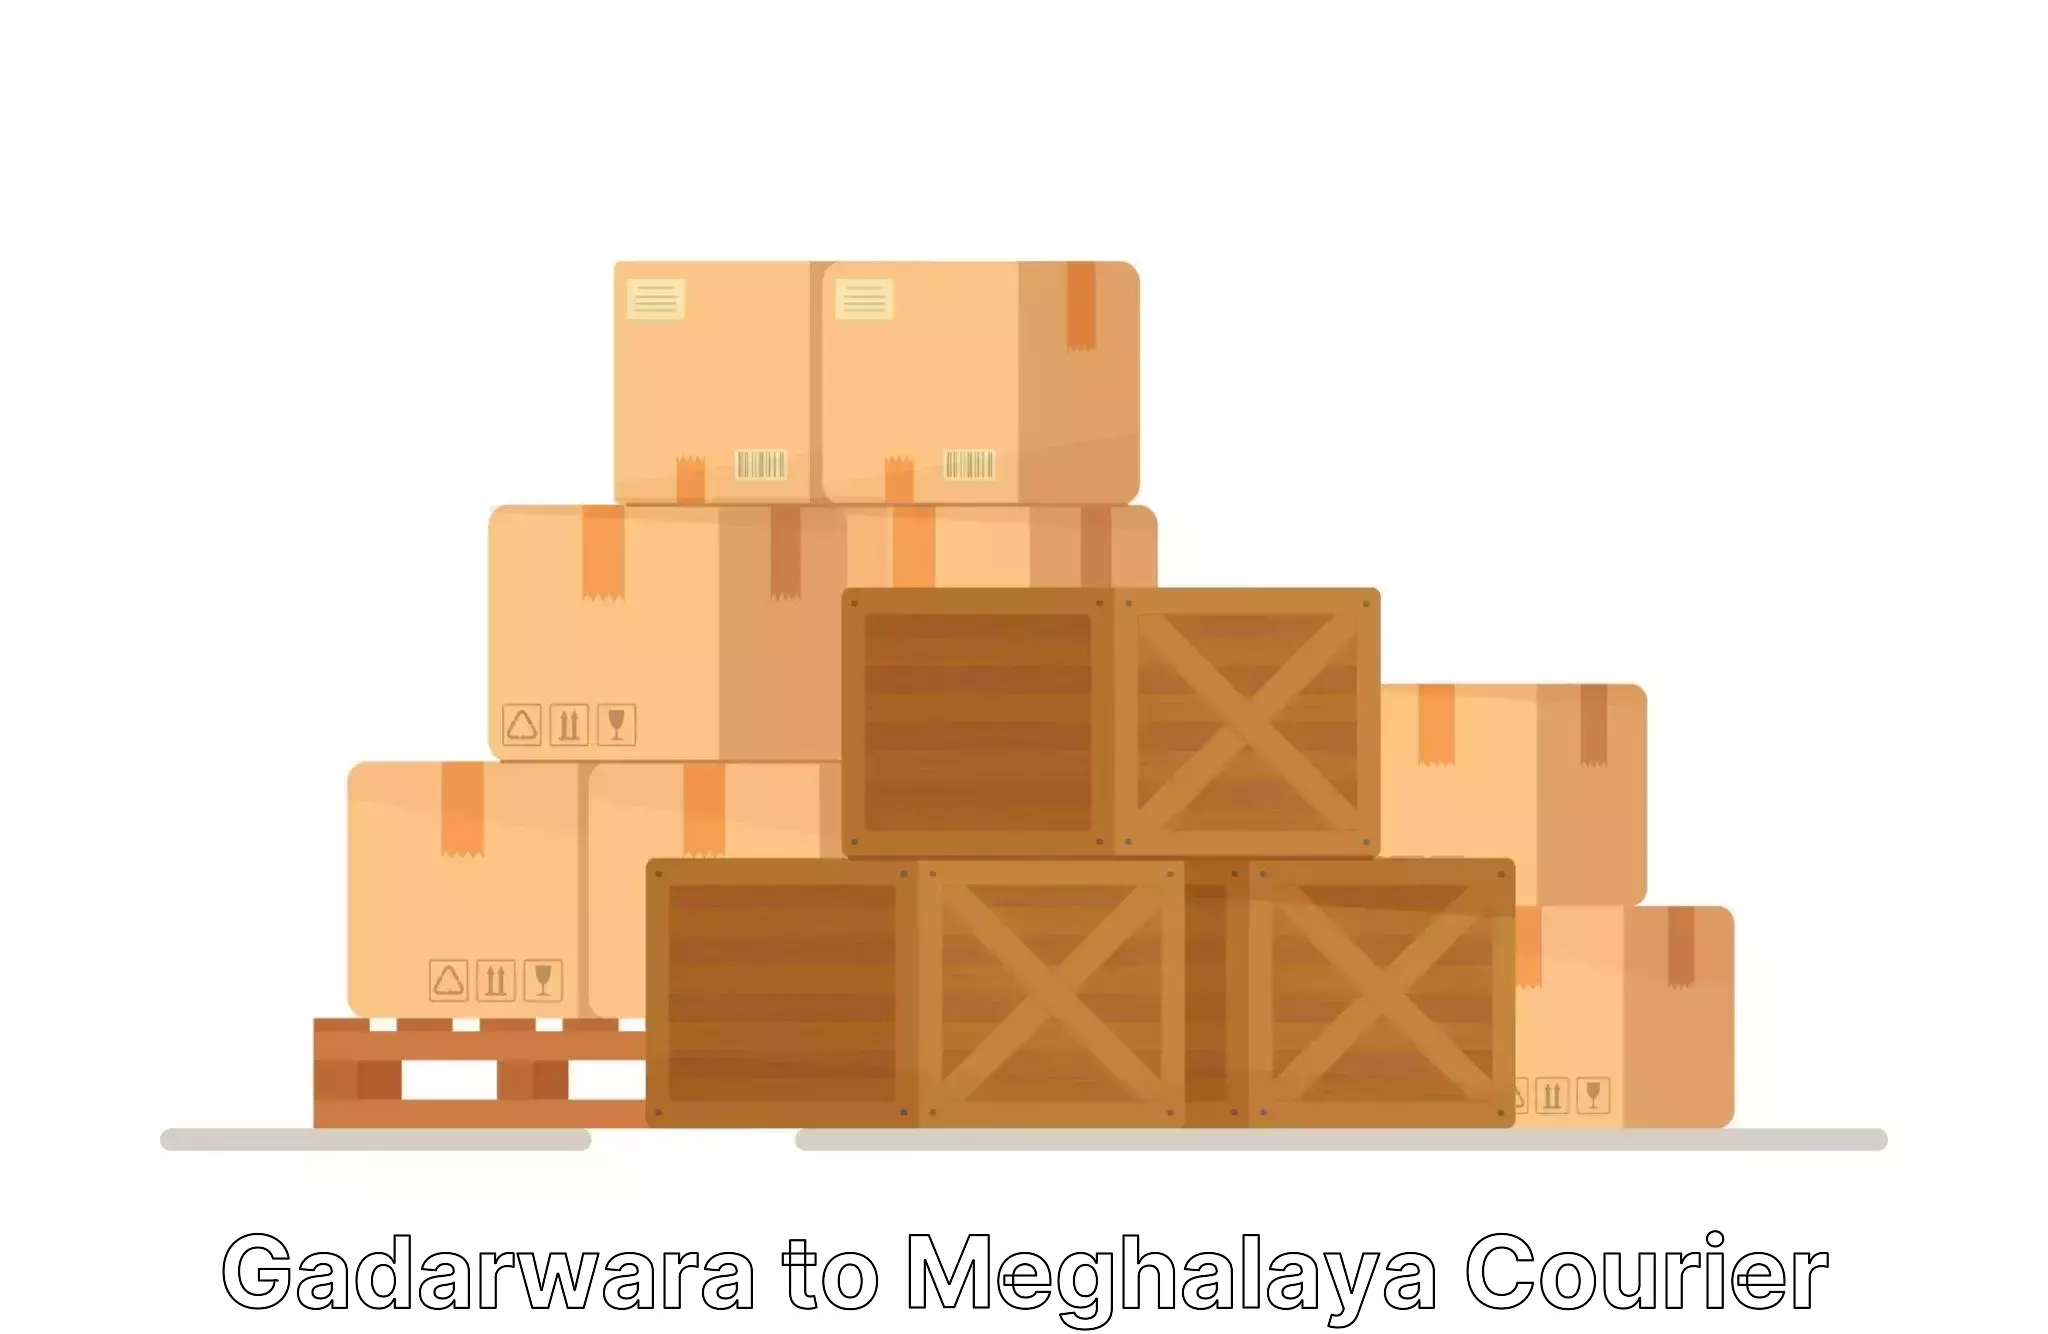 Furniture moving assistance in Gadarwara to Phulbari